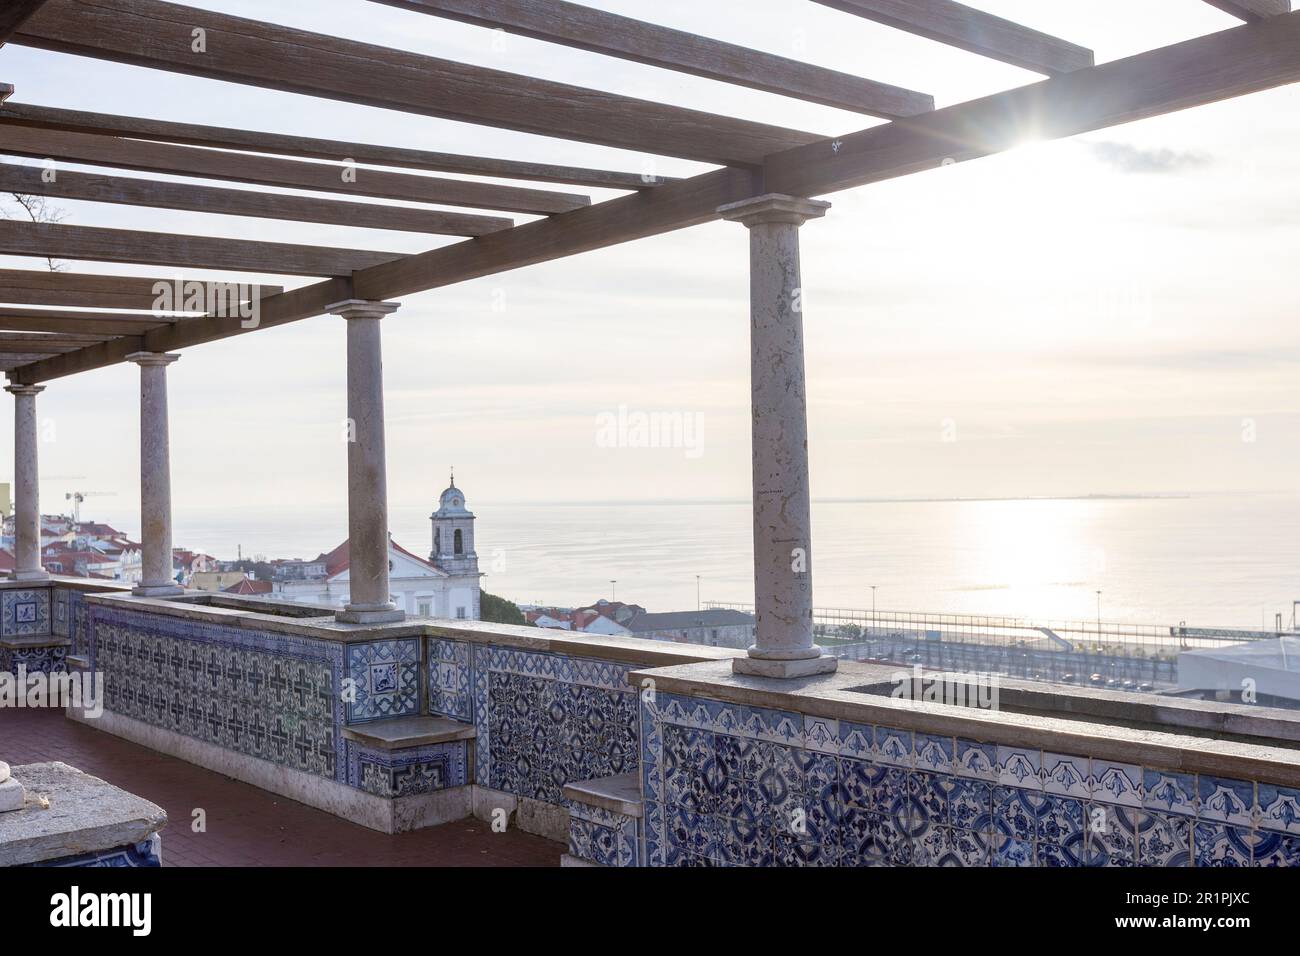 Miradouro de Santa Luzia, una piattaforma di osservazione con pergola che offre vedute spettacolari di Lisbona e del fiume Tago Foto Stock